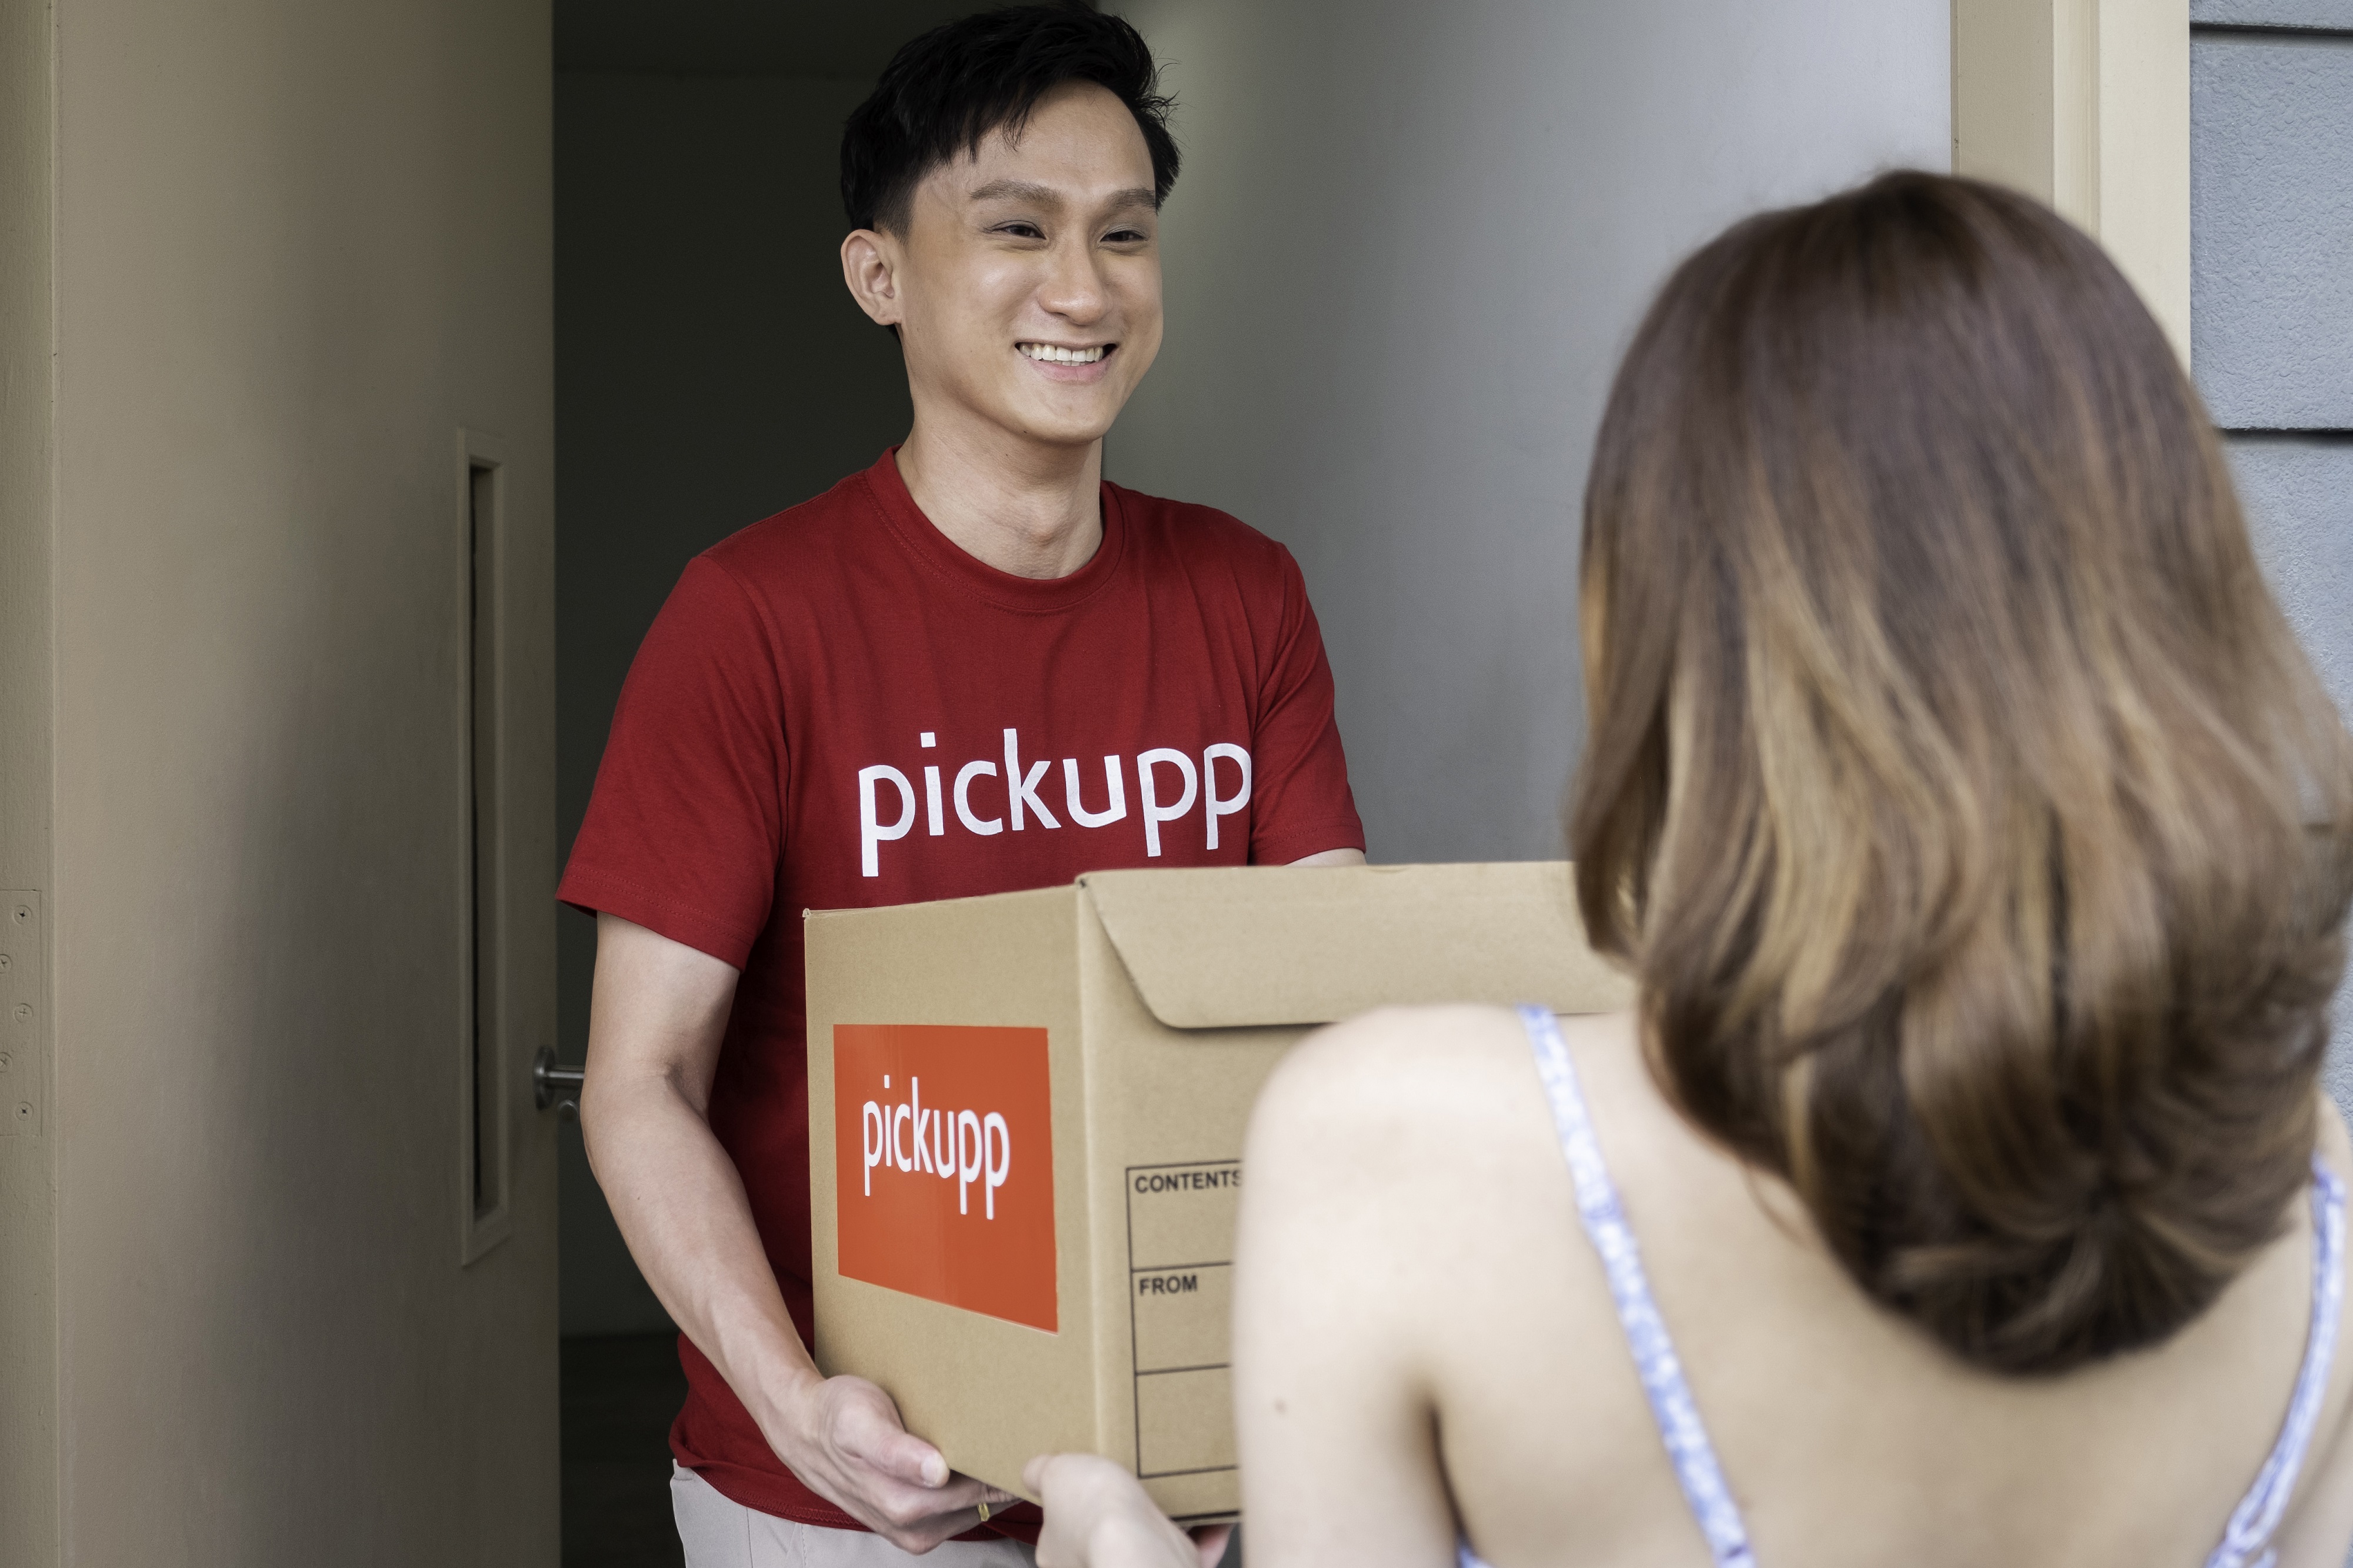 Pickupp hợp tác với Đại học Quốc gia Singapore (NUS) để phát triển các giải pháp nâng cao hiệu quả logistics